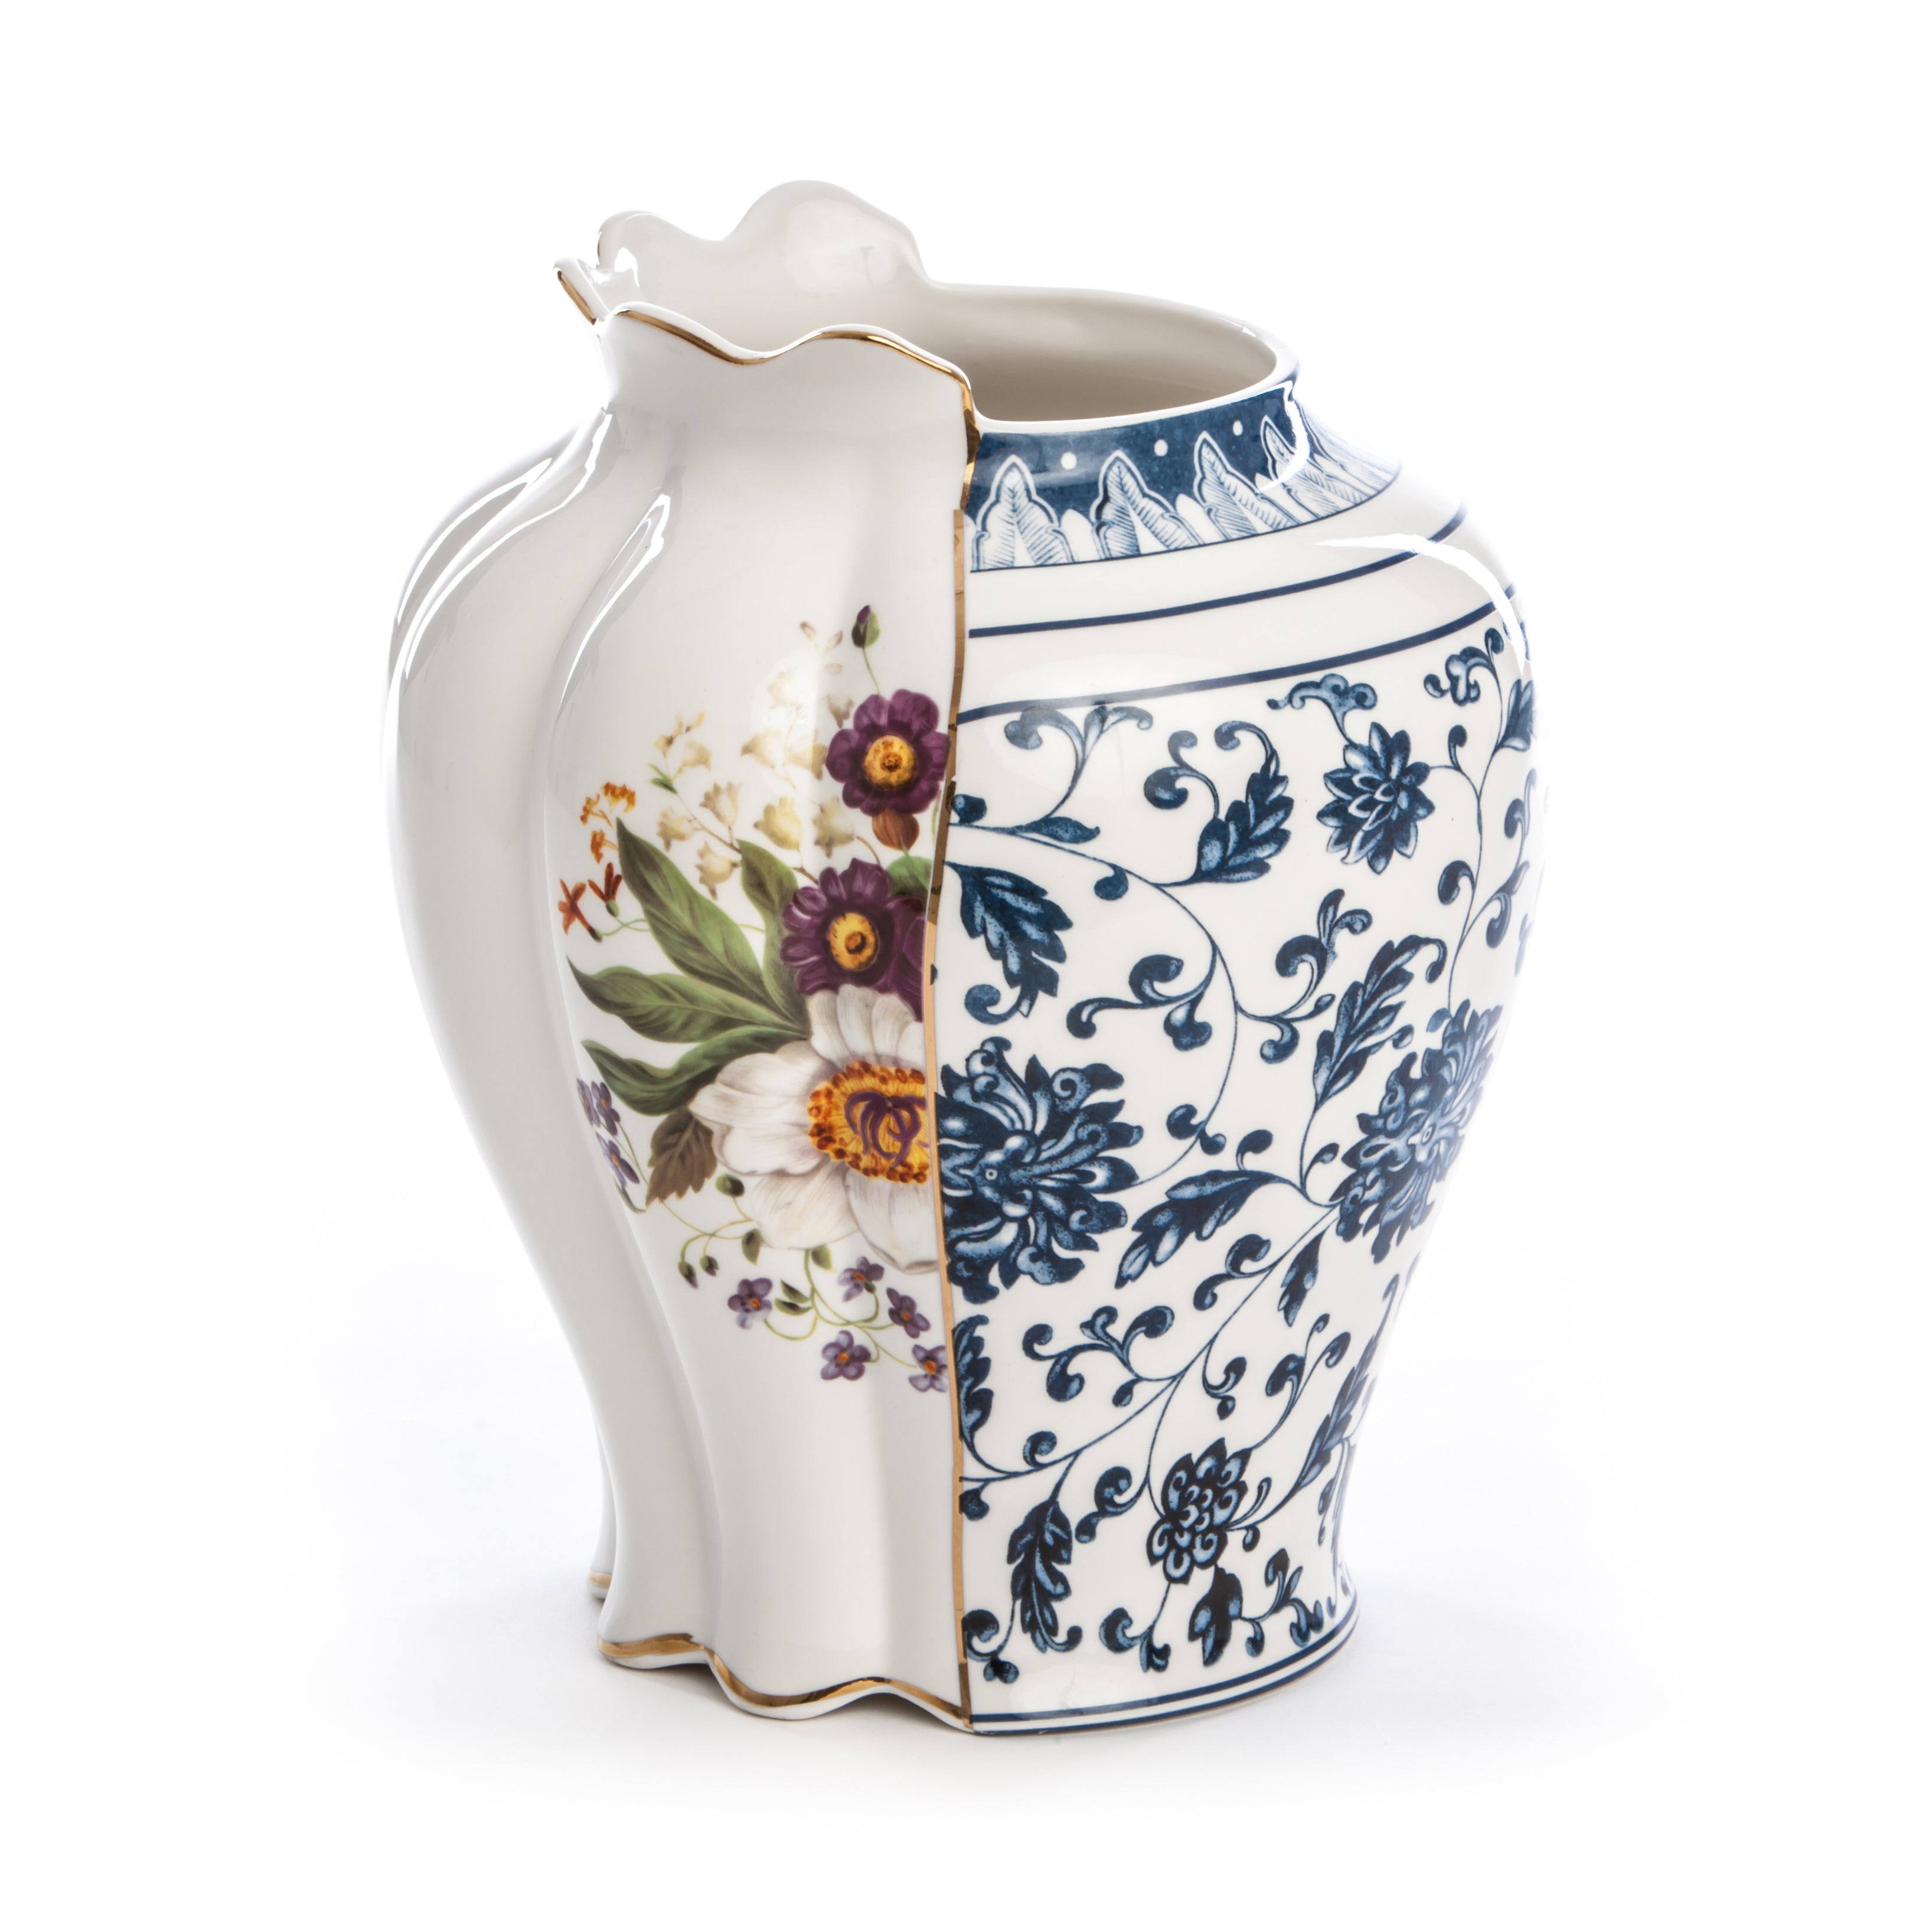 Seletti Hybrid Melania Porcelain vase